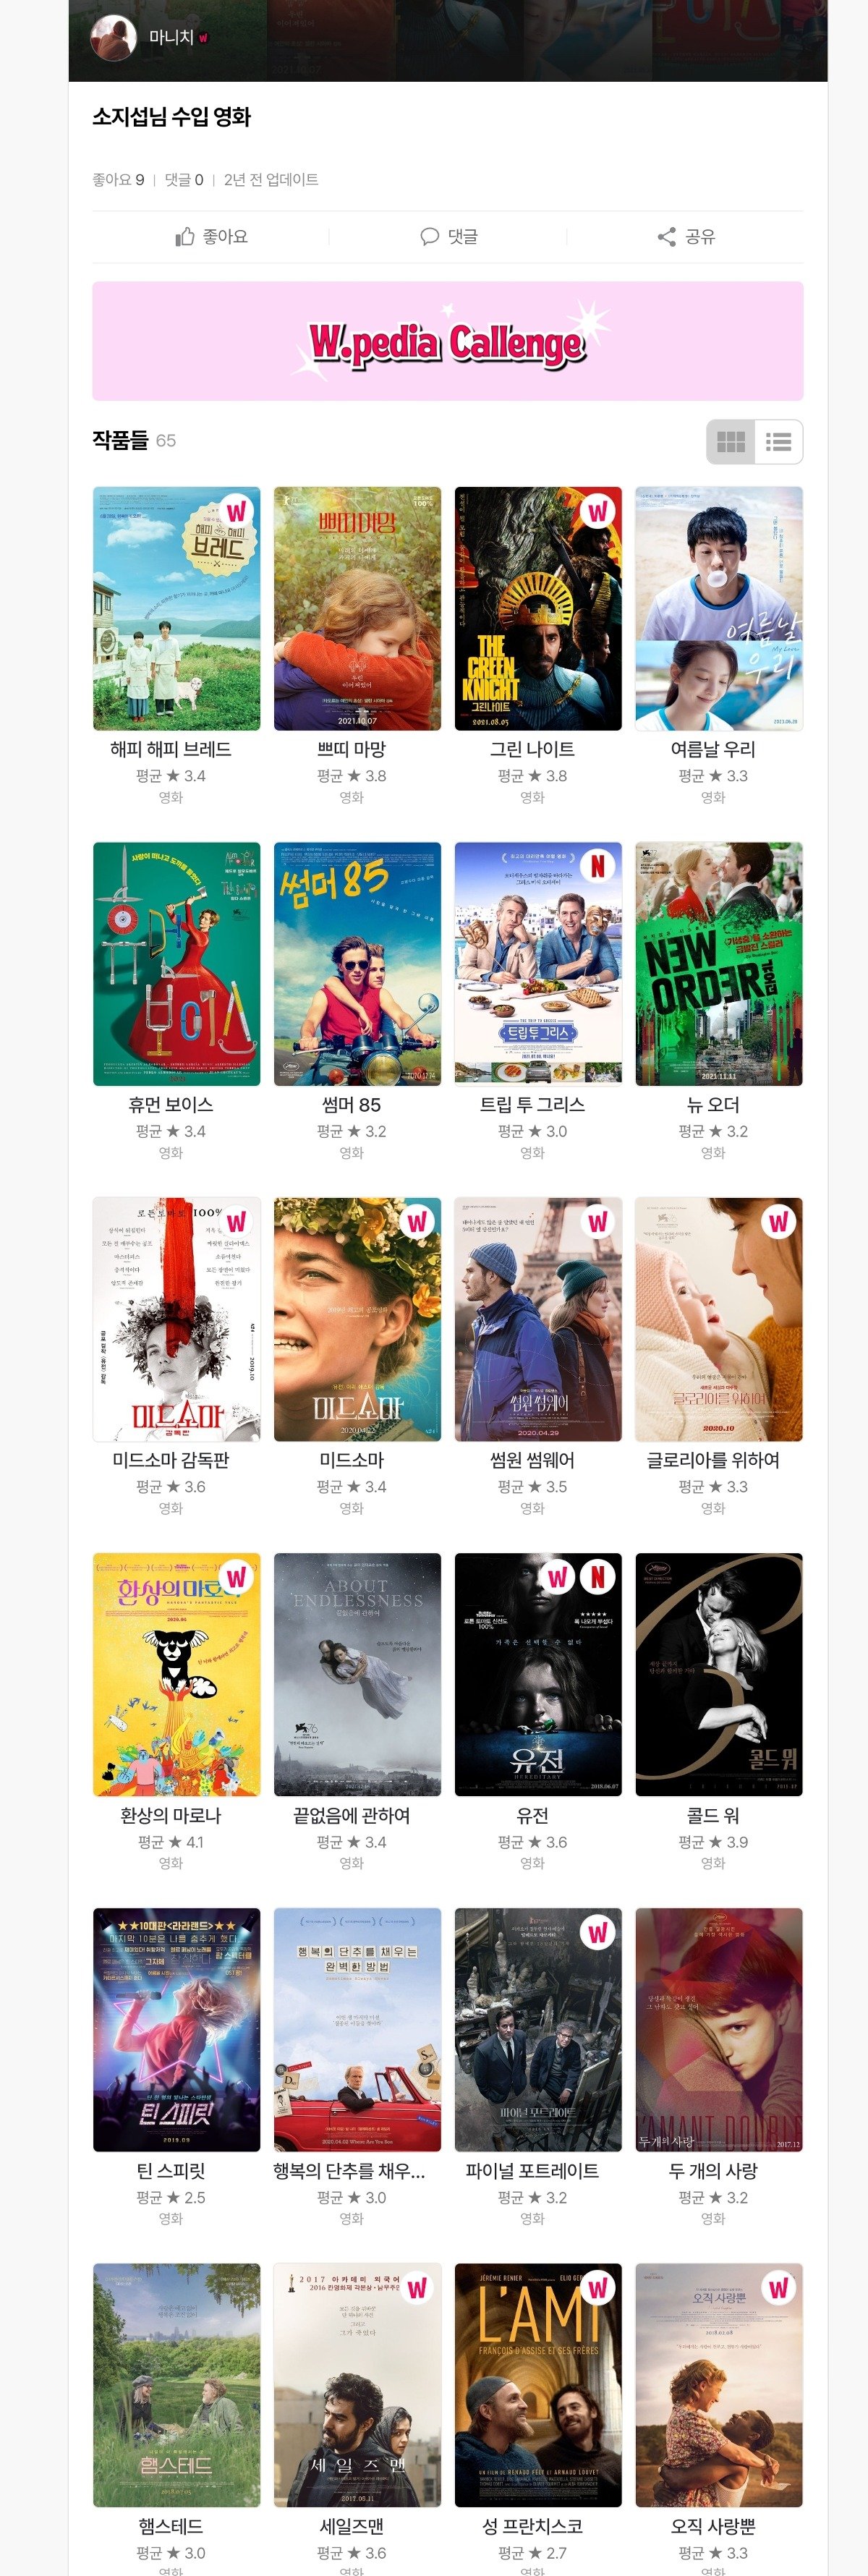 한국의 영화 마니아들이 소지섭에게 큰 신세 지고 있는 이유